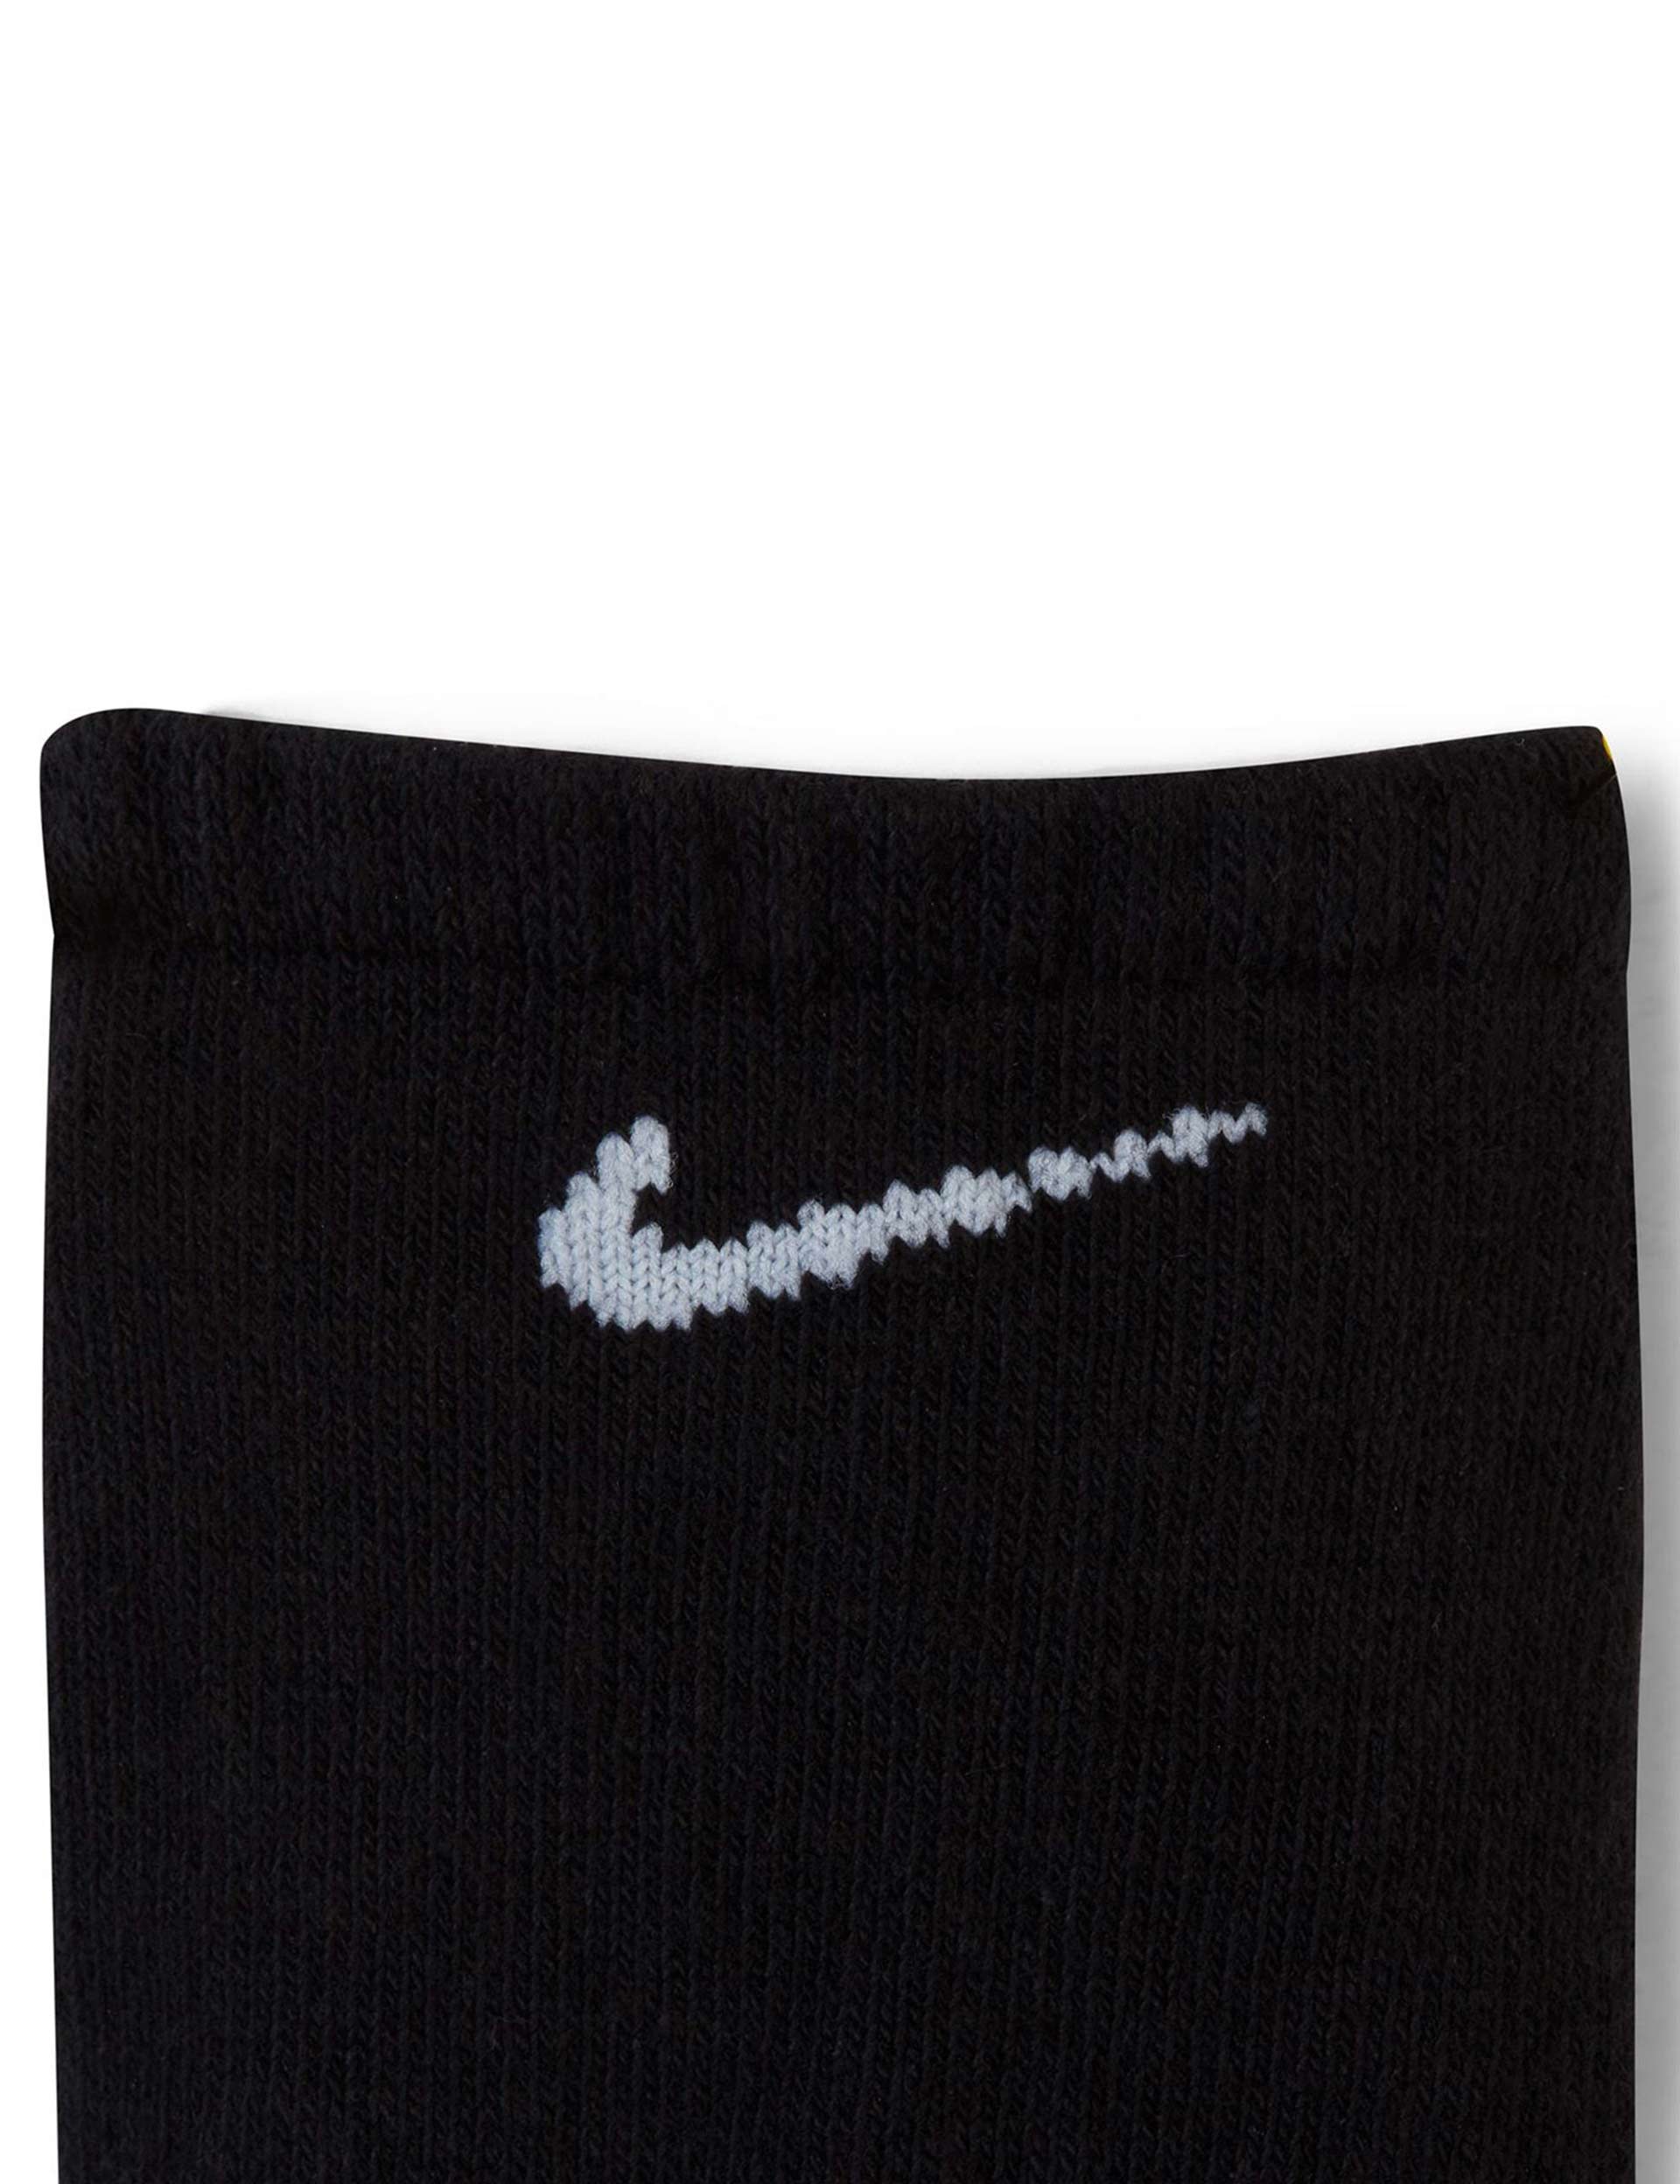 Nike Everyday Cushioned Socks (3 pairs) - Black/Whiteimage5- The Sports Edit